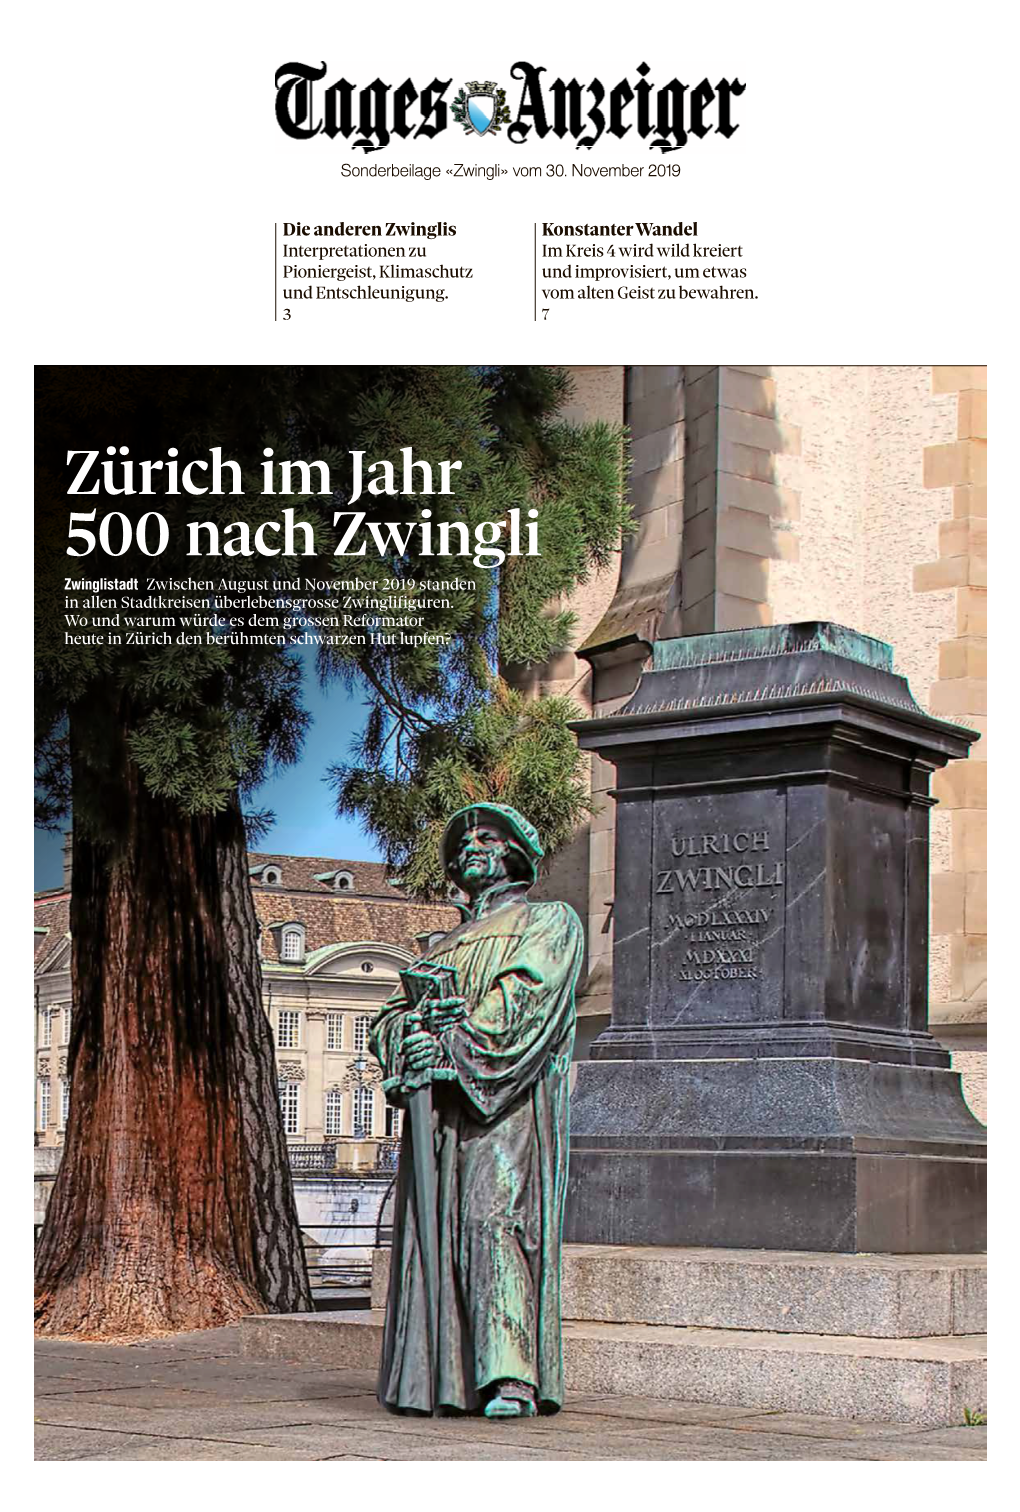 Zürich Im Jahr 500 Nach Zwingli Zwinglistadt Zwischen August Und November 2019 Standen in Allen Stadtkreisen Überlebensgrosse Zwinglifiguren